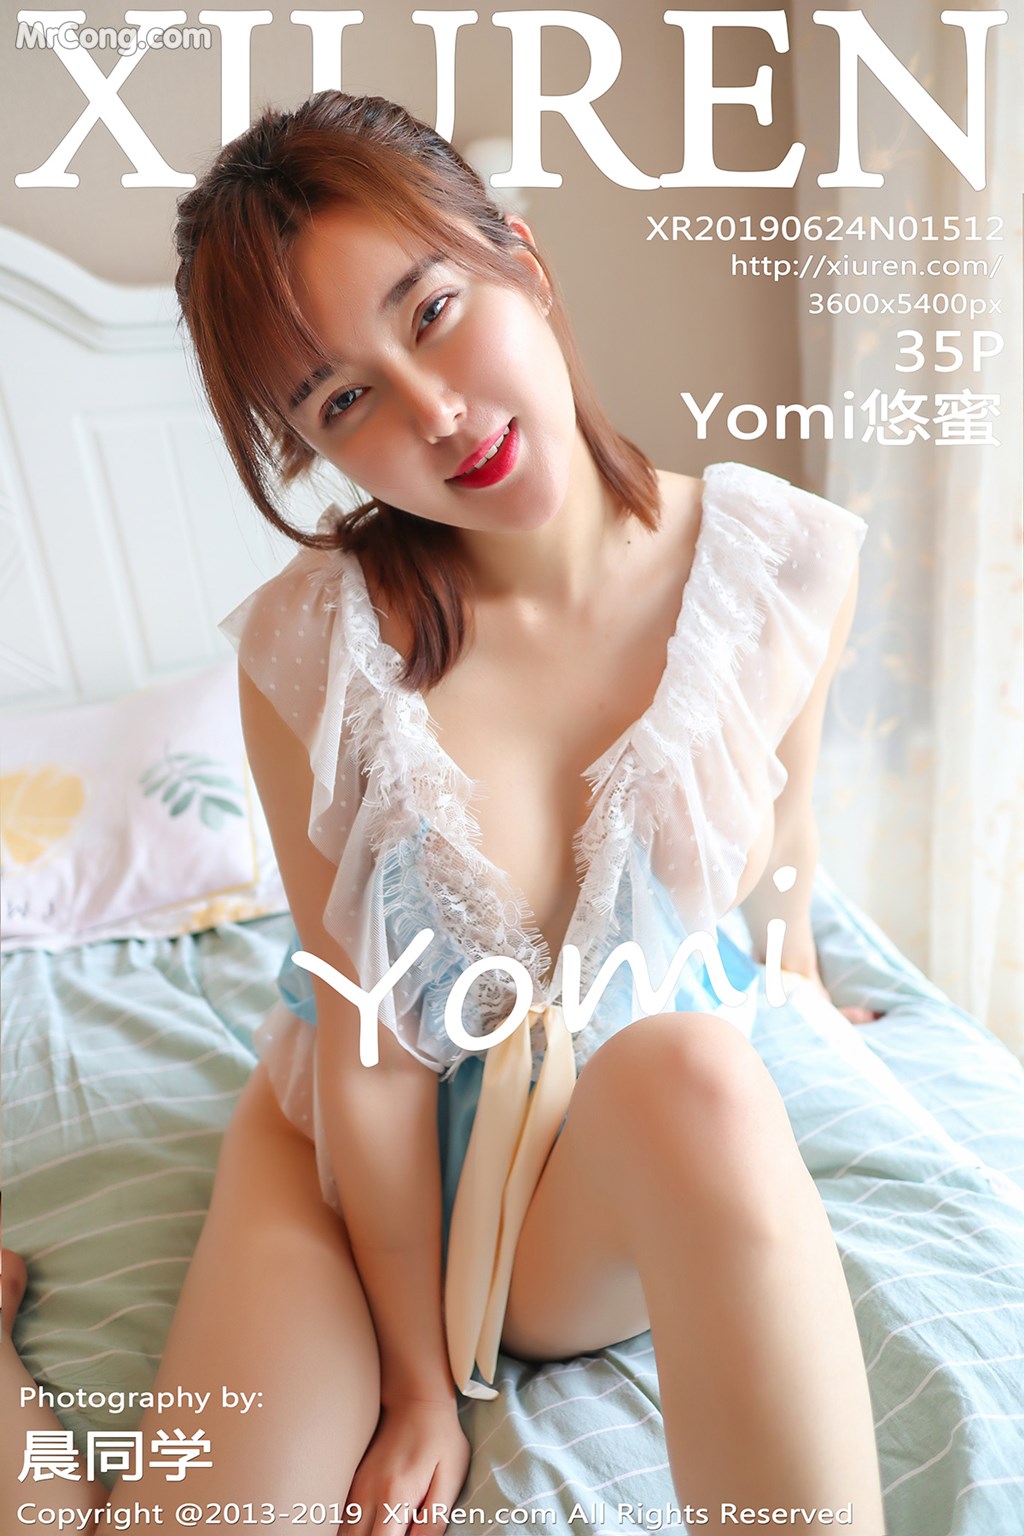 XIUREN No. 1512: Yomi 悠 蜜 (36 pictures) photo 1-0